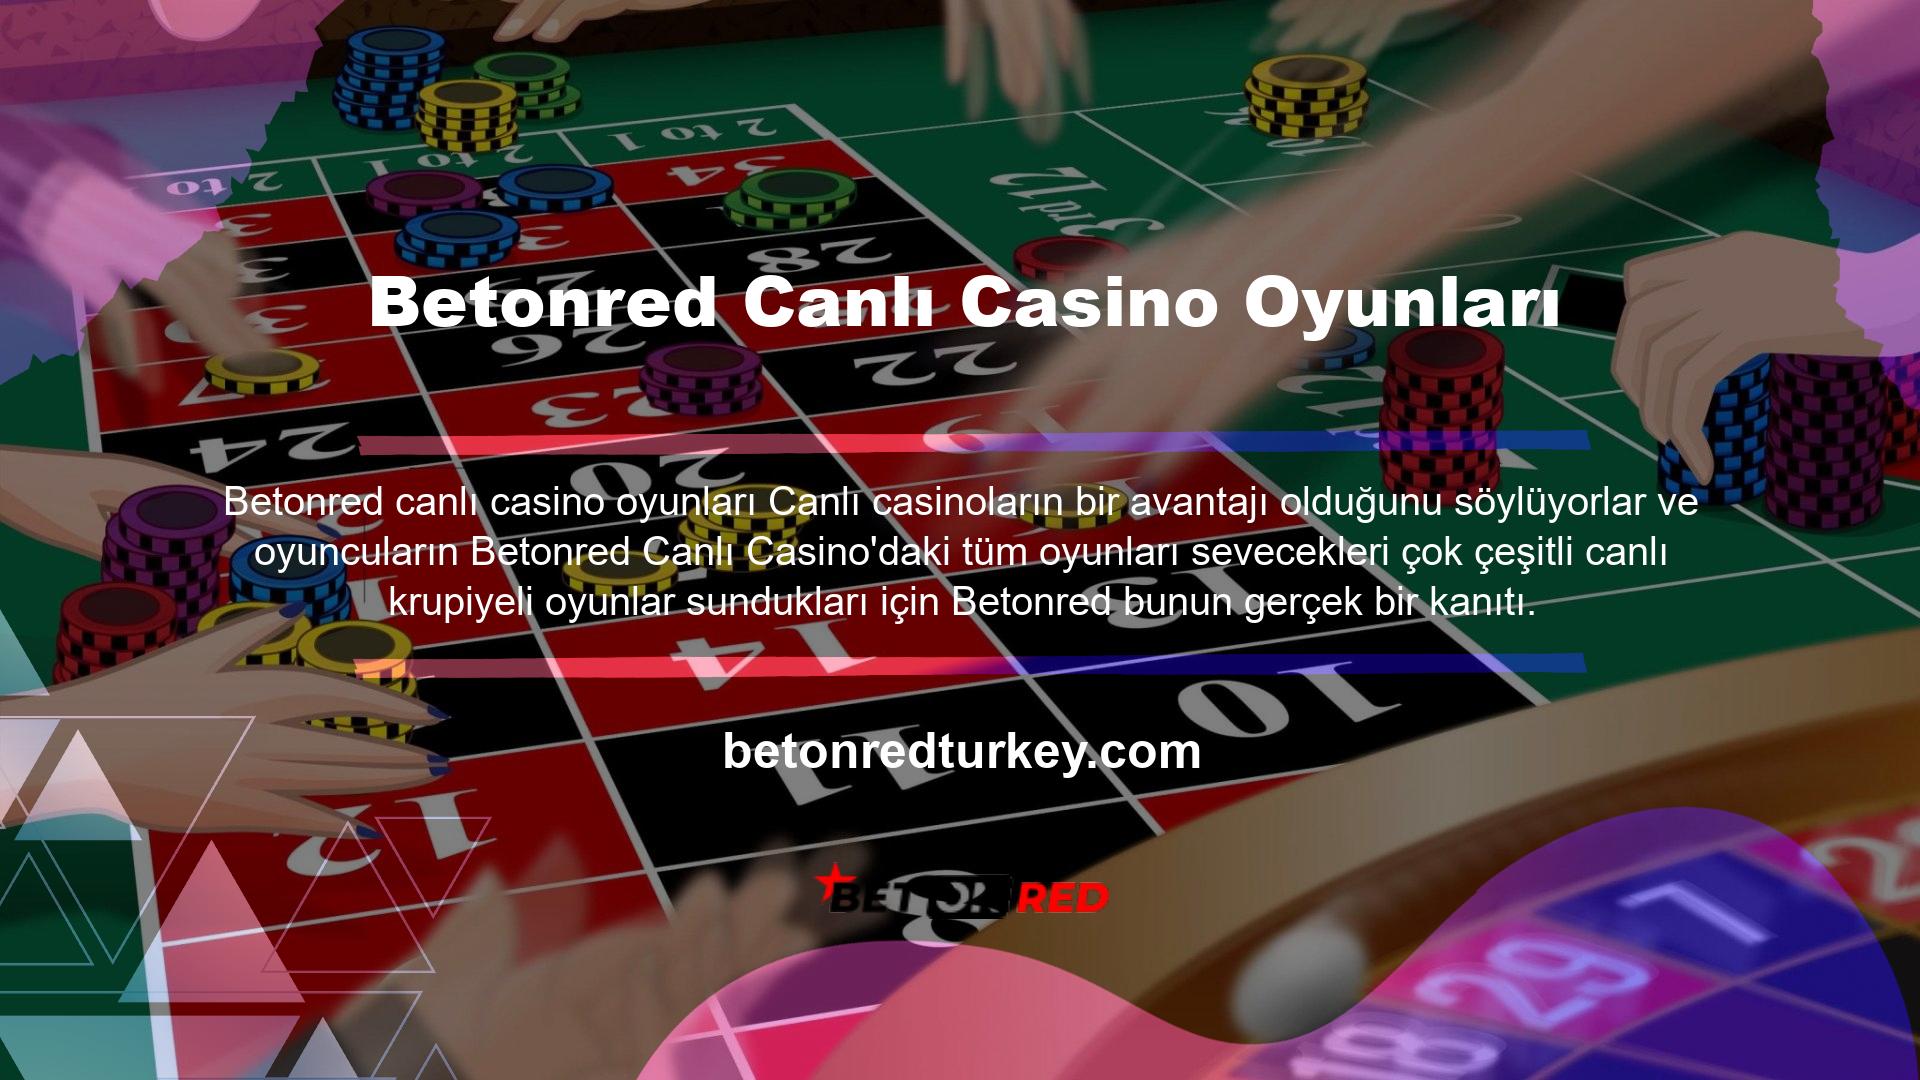 Canlı casino butonuna tıklamak sizi başka bir sayfaya yönlendirir